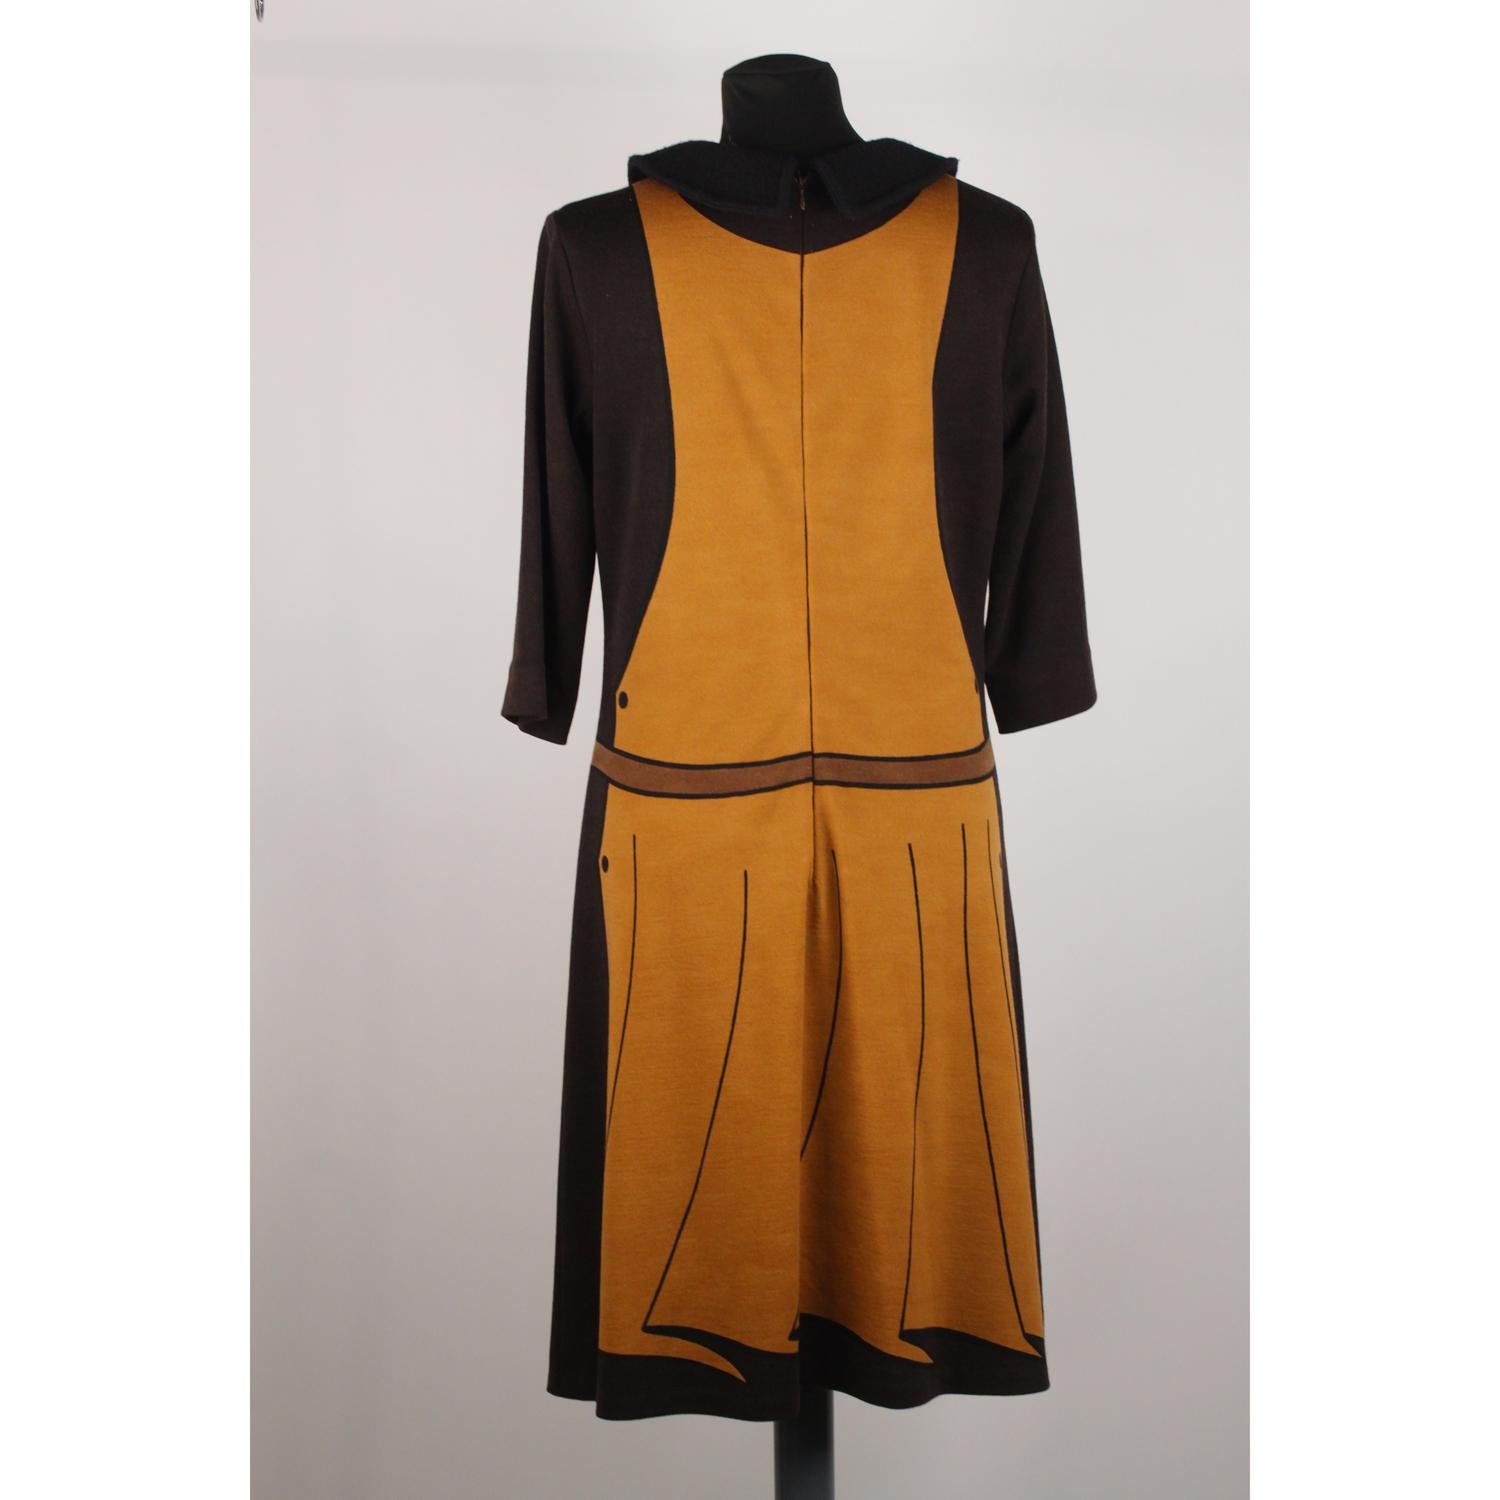 Roberta Di Camerino Vintage Trompe l'Oeil 3/4 Sleeve Dress Size 48 1